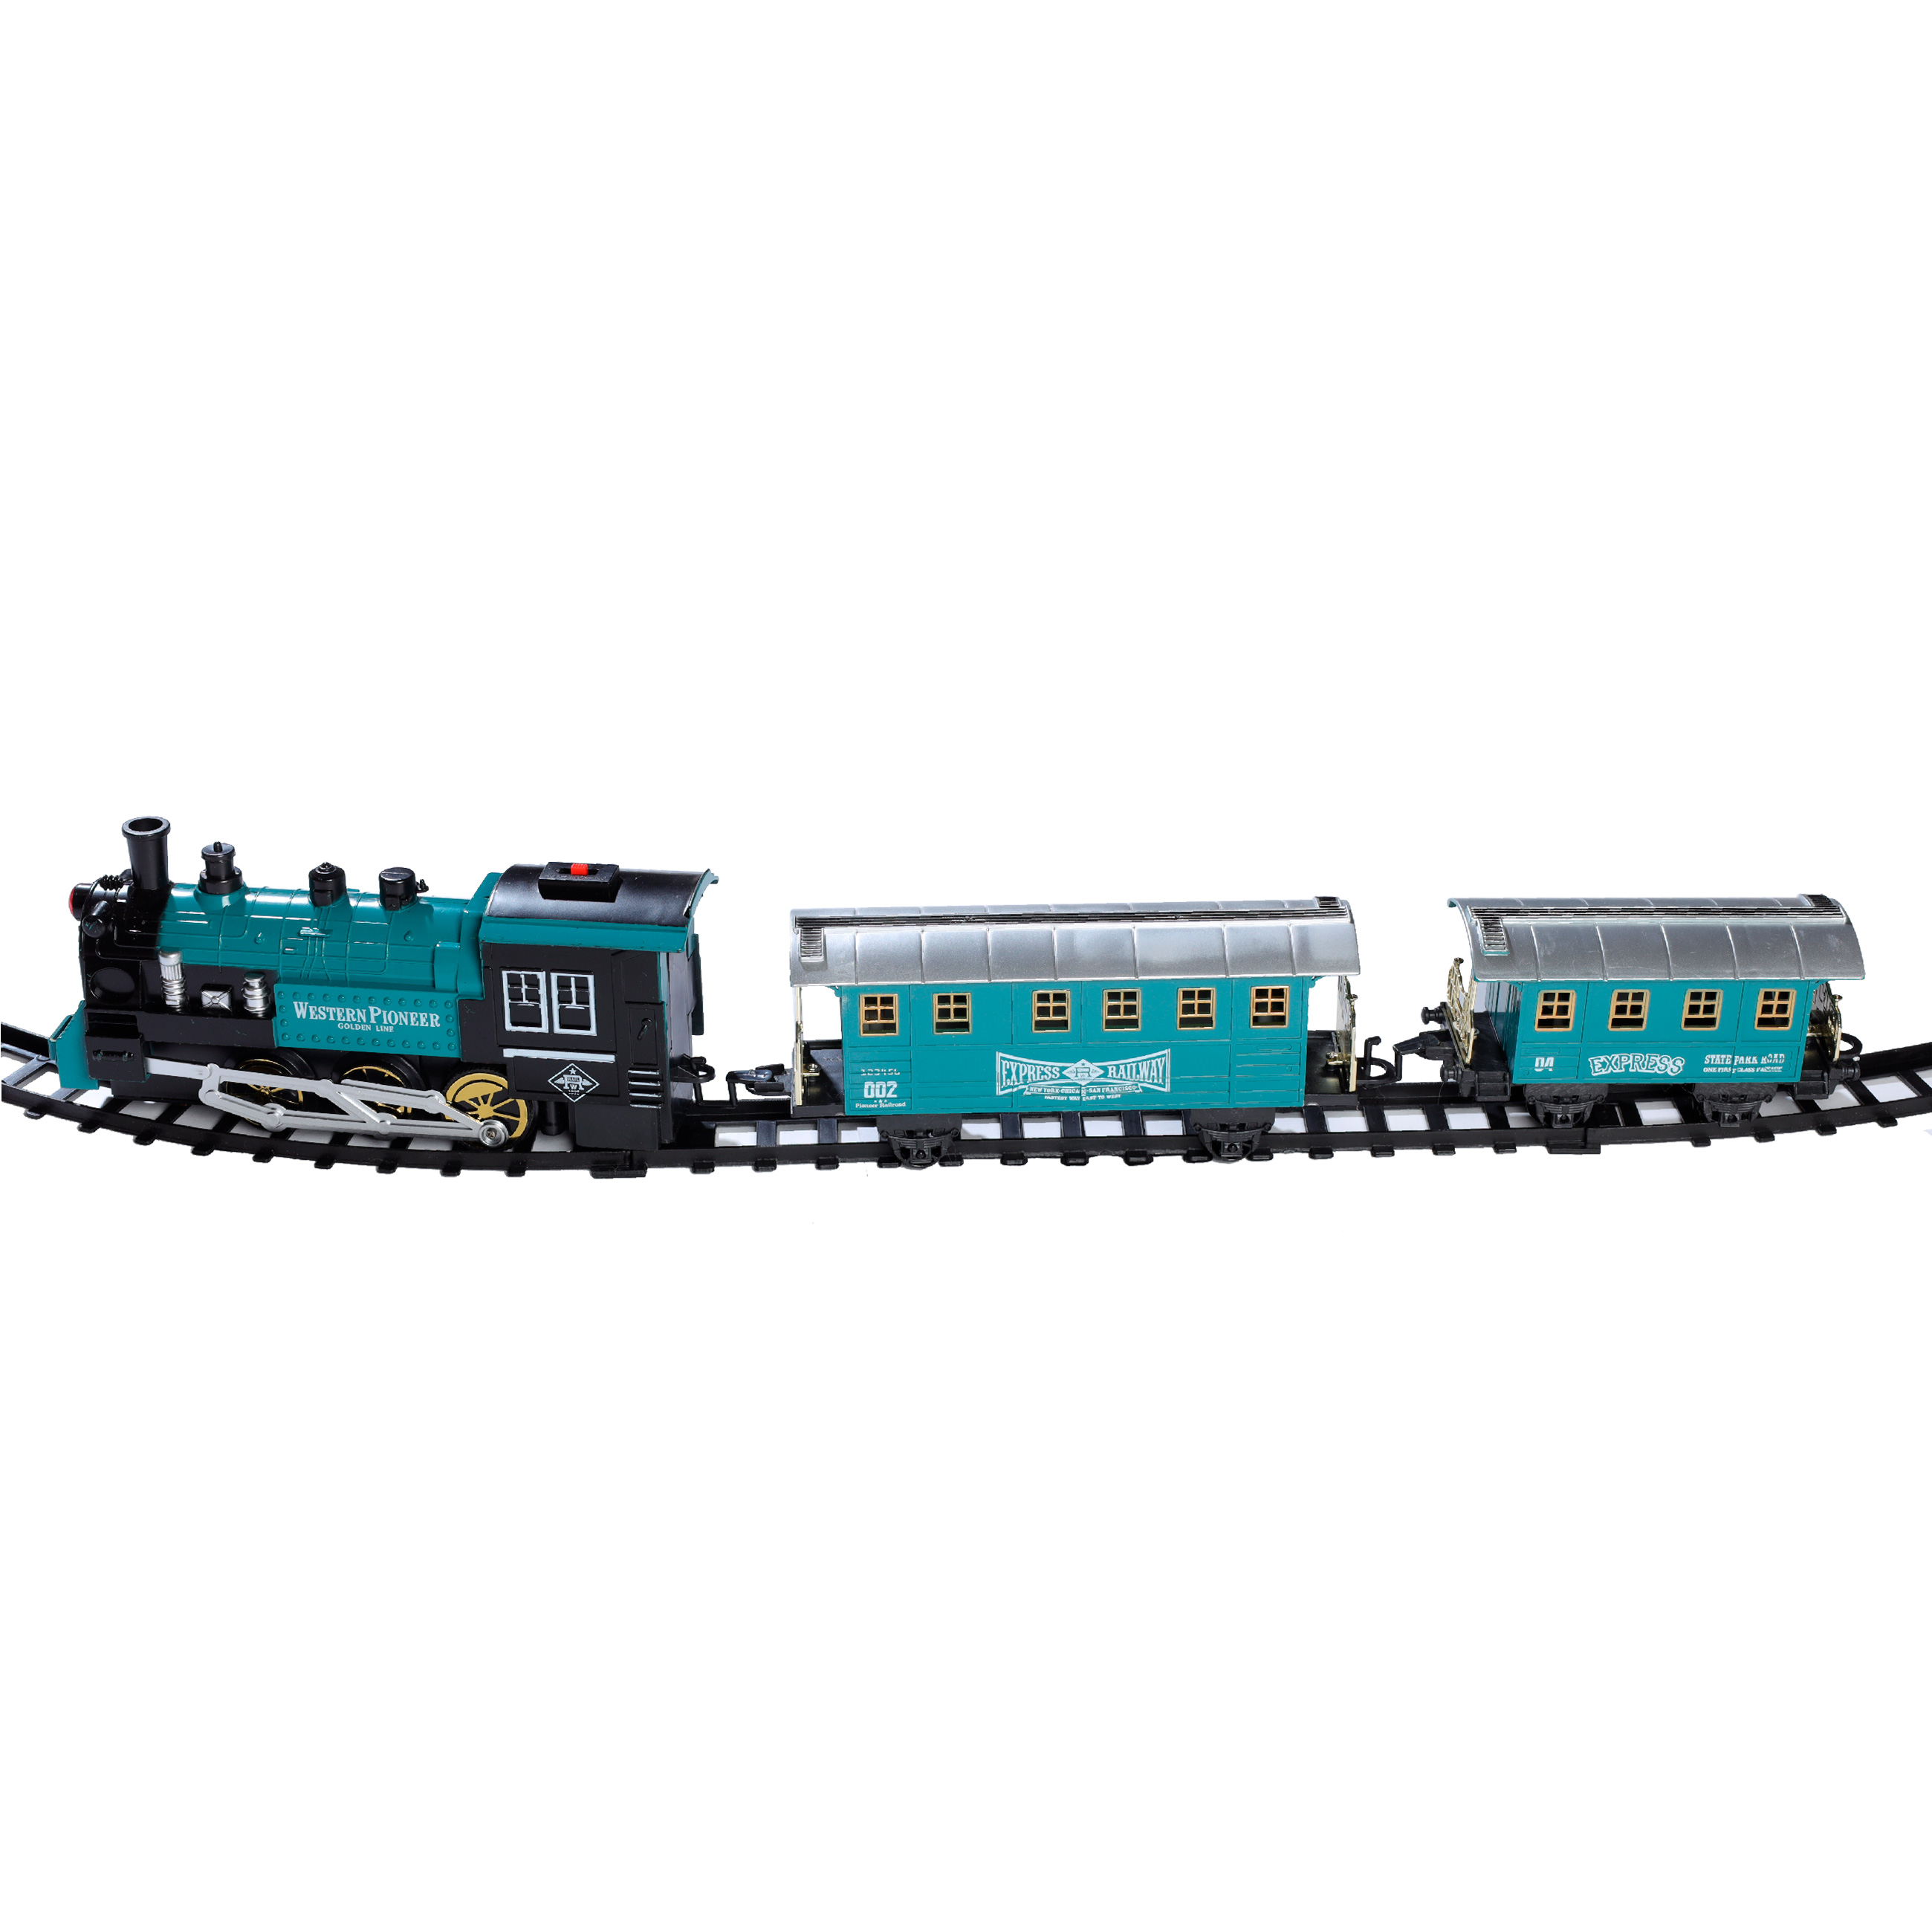 Железная дорога игрушечная, L, музыкальная, с подсветкой/дымом, пластик, Game rail